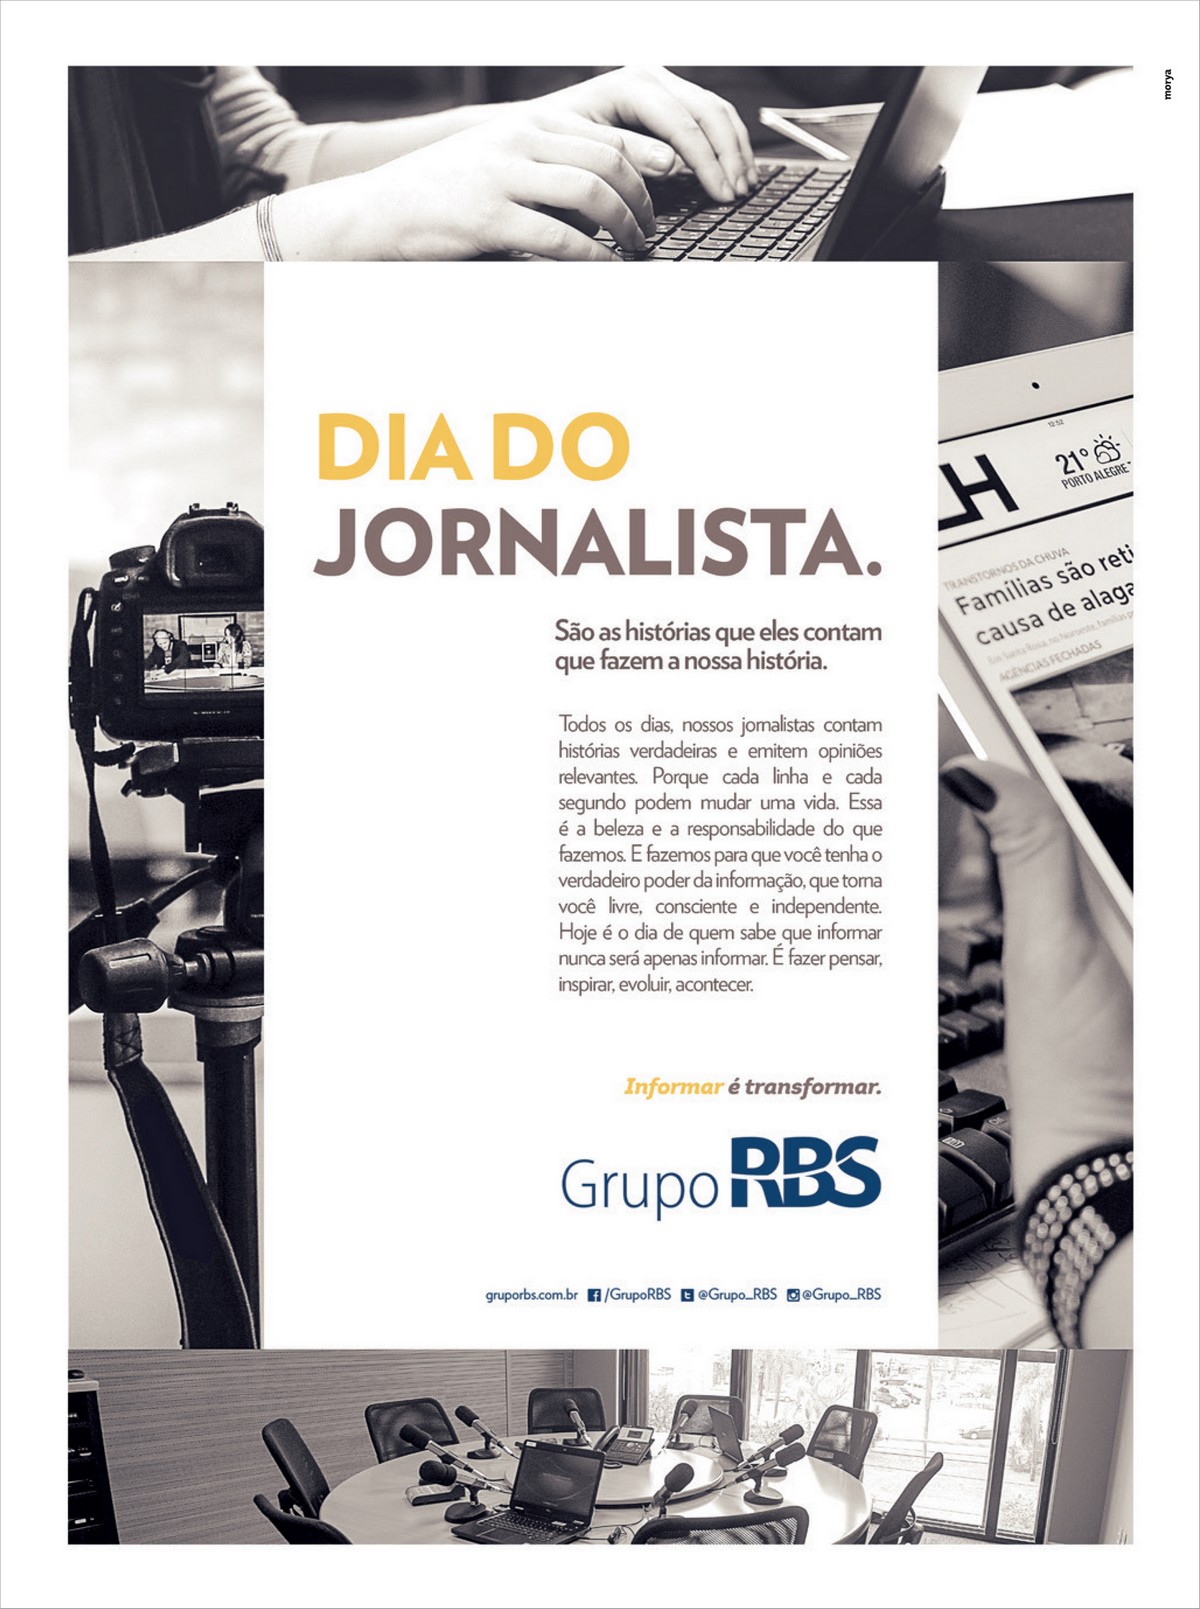 Grupo RBS promove ação no Dia do Jornalista para homenagear profissionais